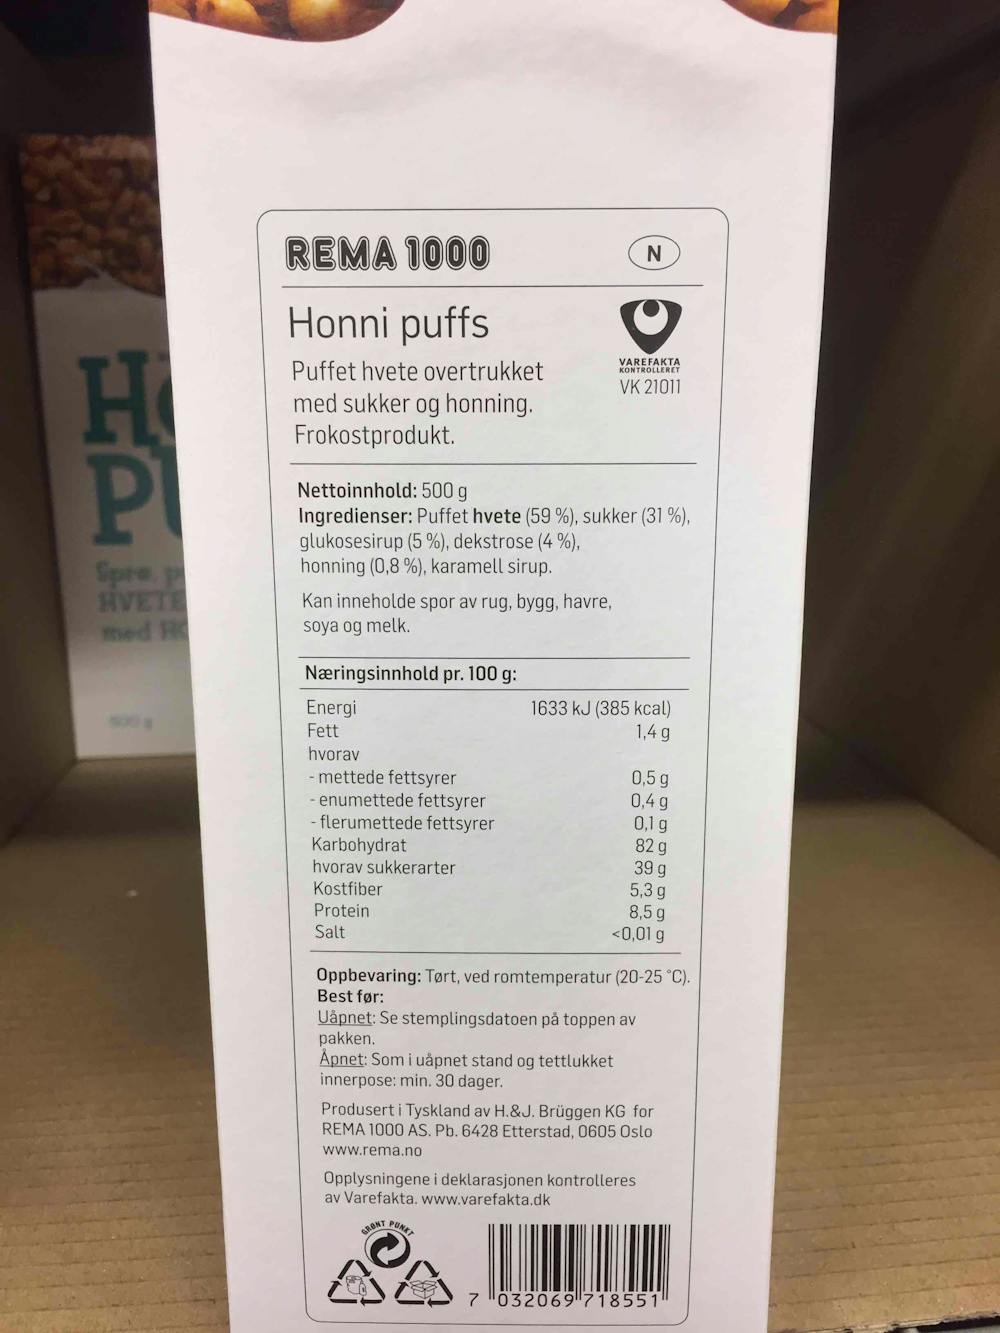 Ingredienslisten til Rema 1000 Honni puffs